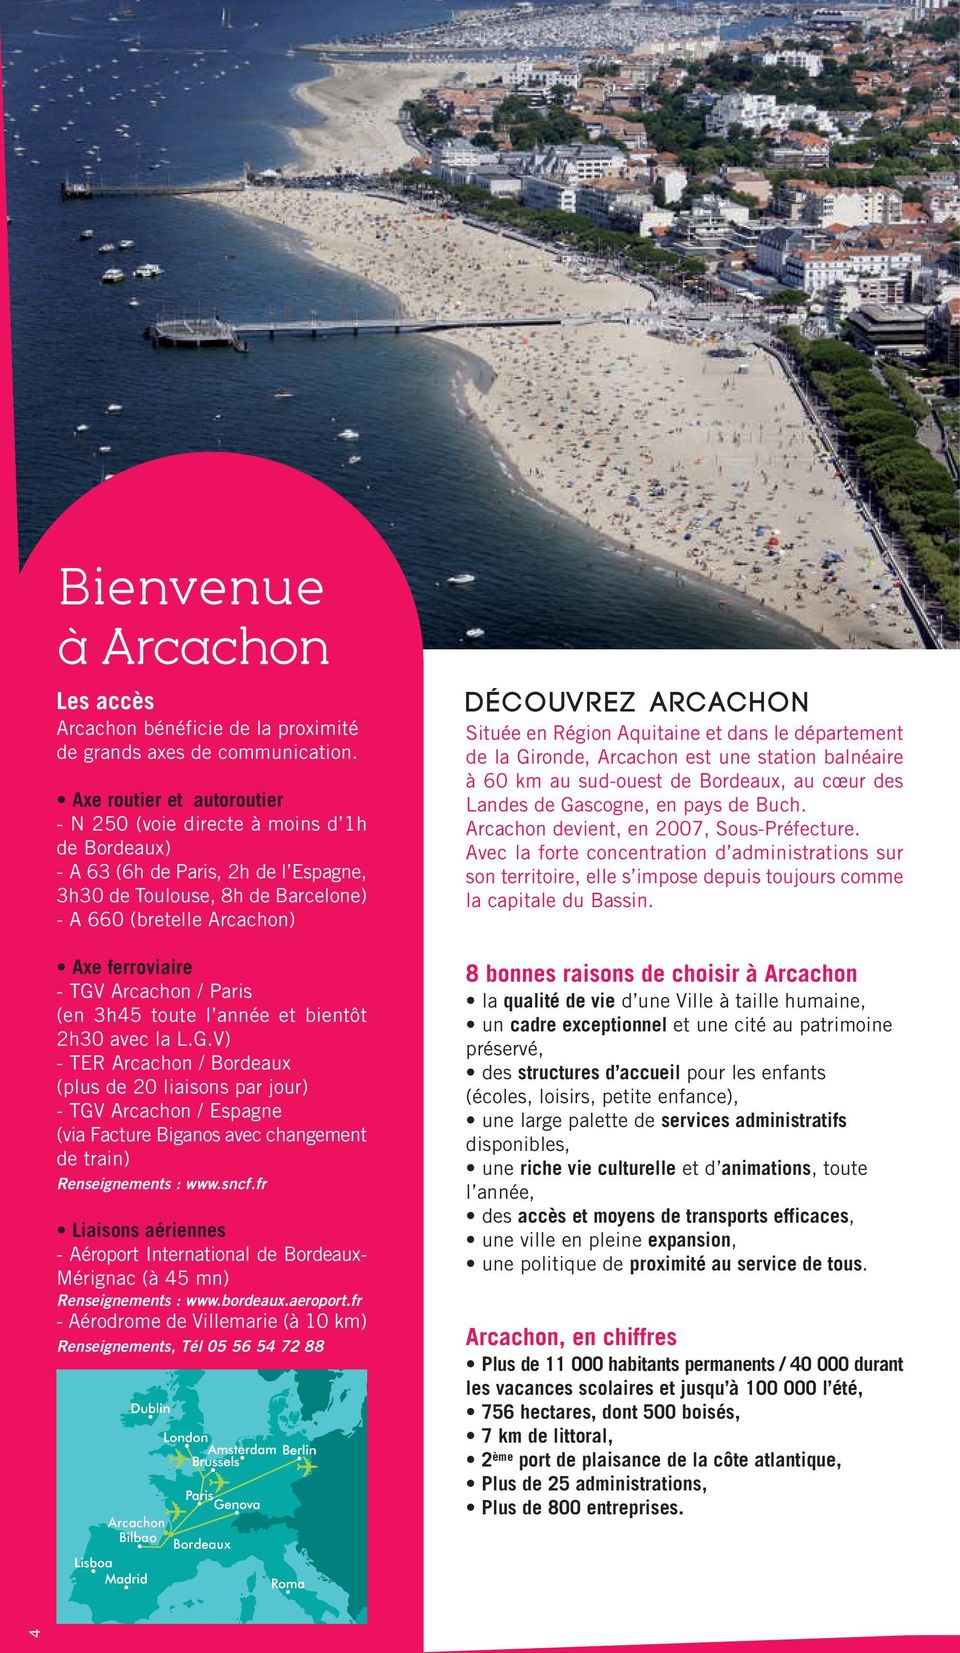 Arcachon / Paris (en 3h45 toute l année et bientôt 2h30 avec la L.G.